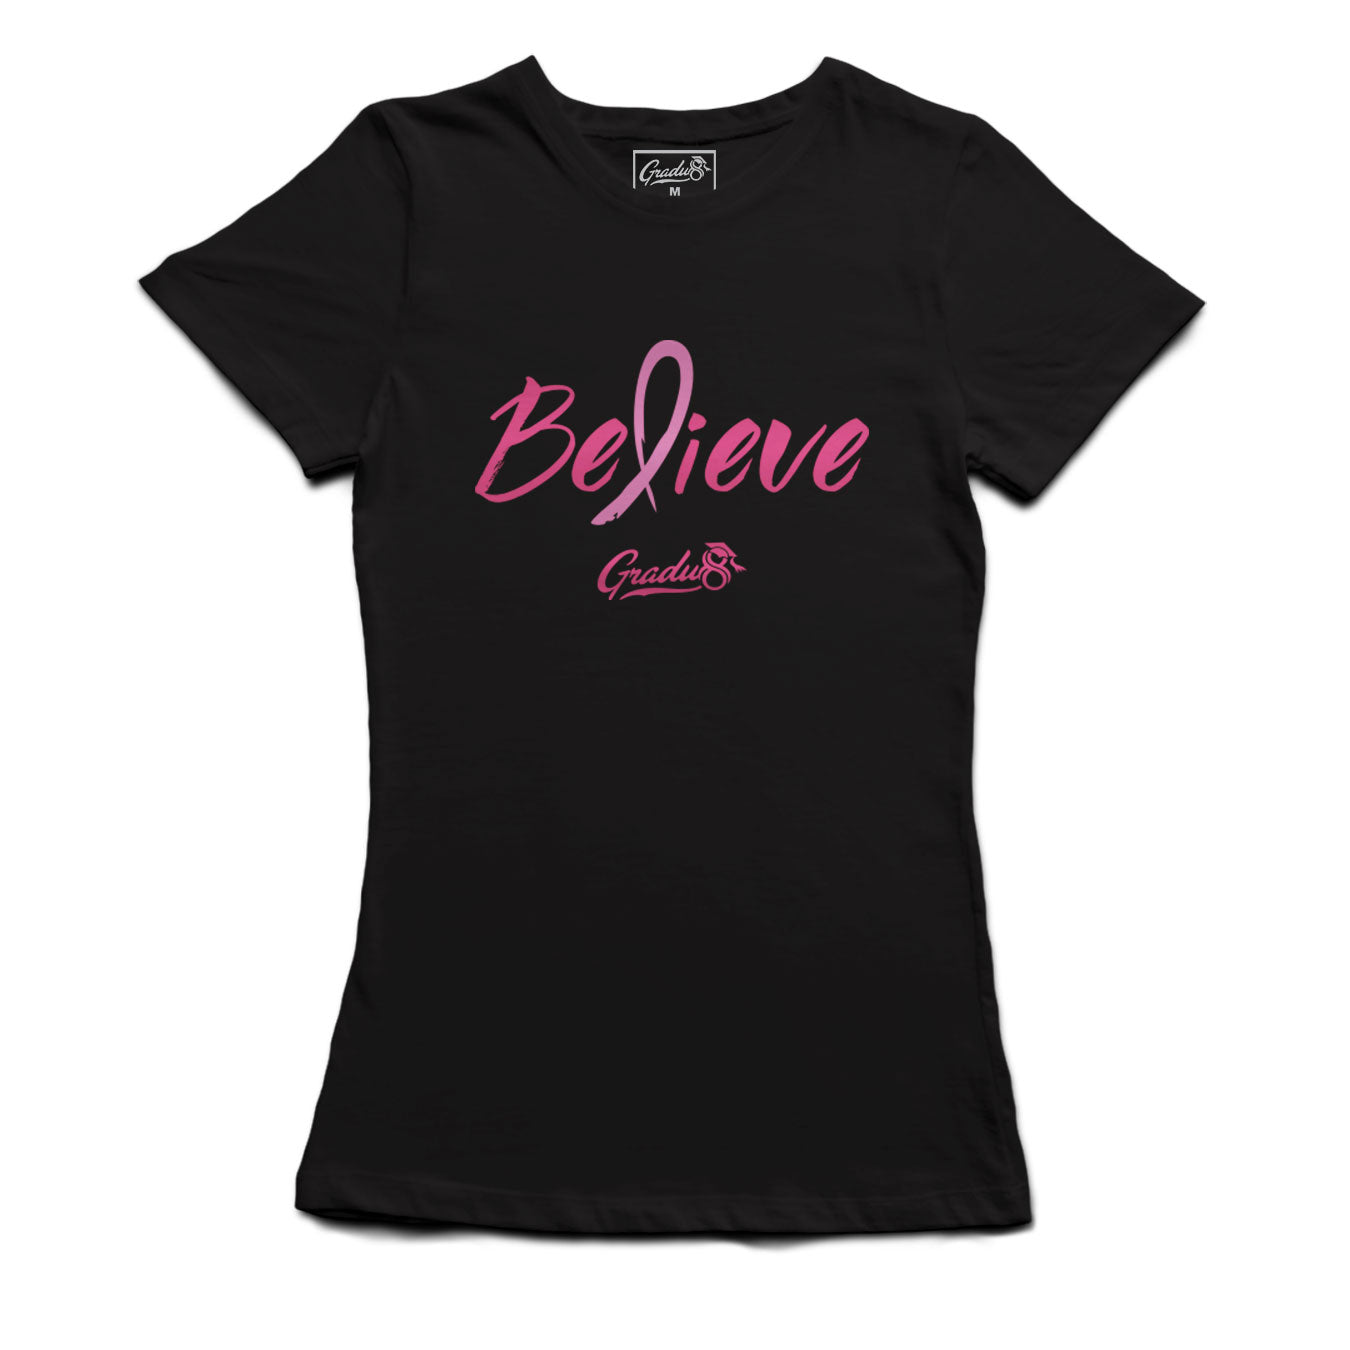 Believe: Women's Breast Cancer Awareness Crew Neck Tee